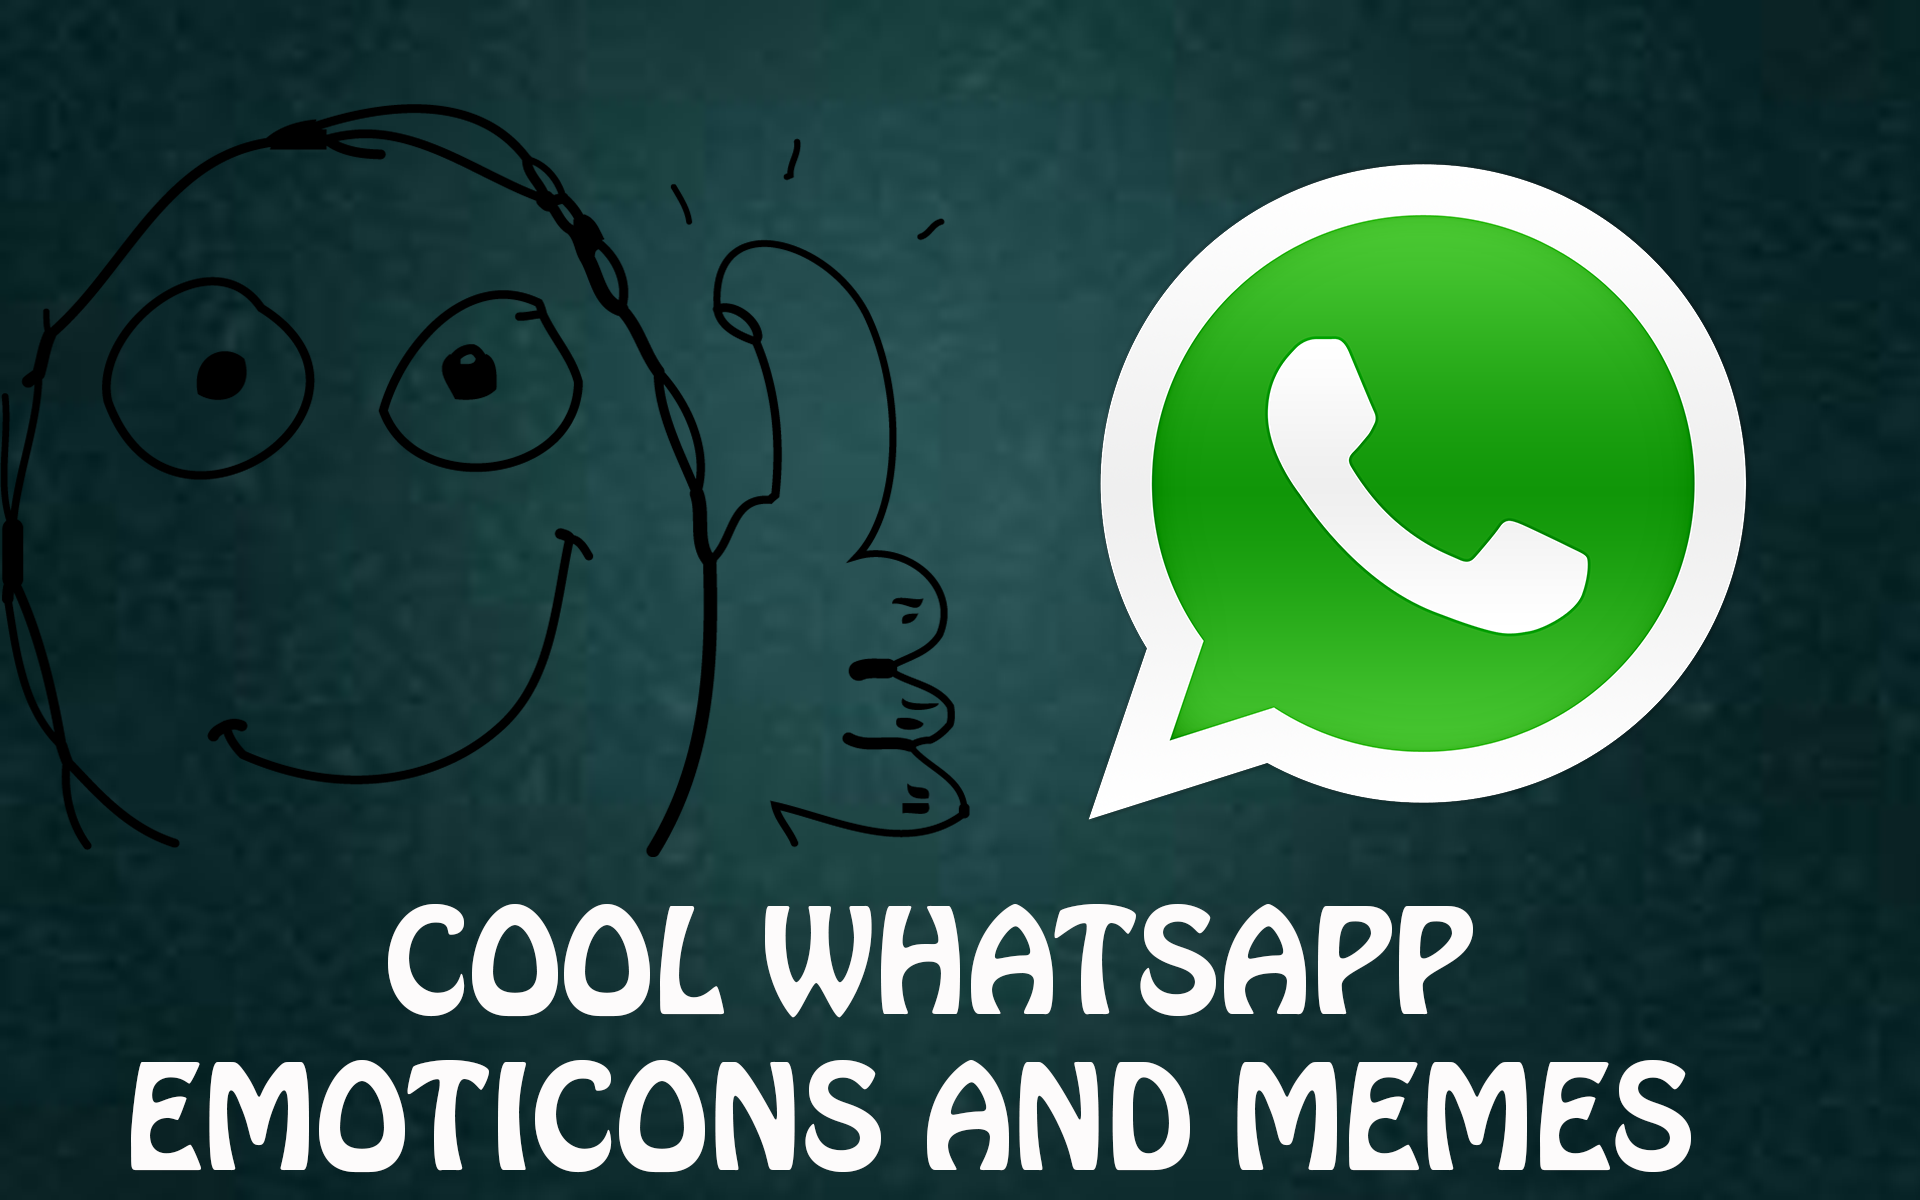 Impresiona a tus amigos con estos emoticonos de WhatsApp.